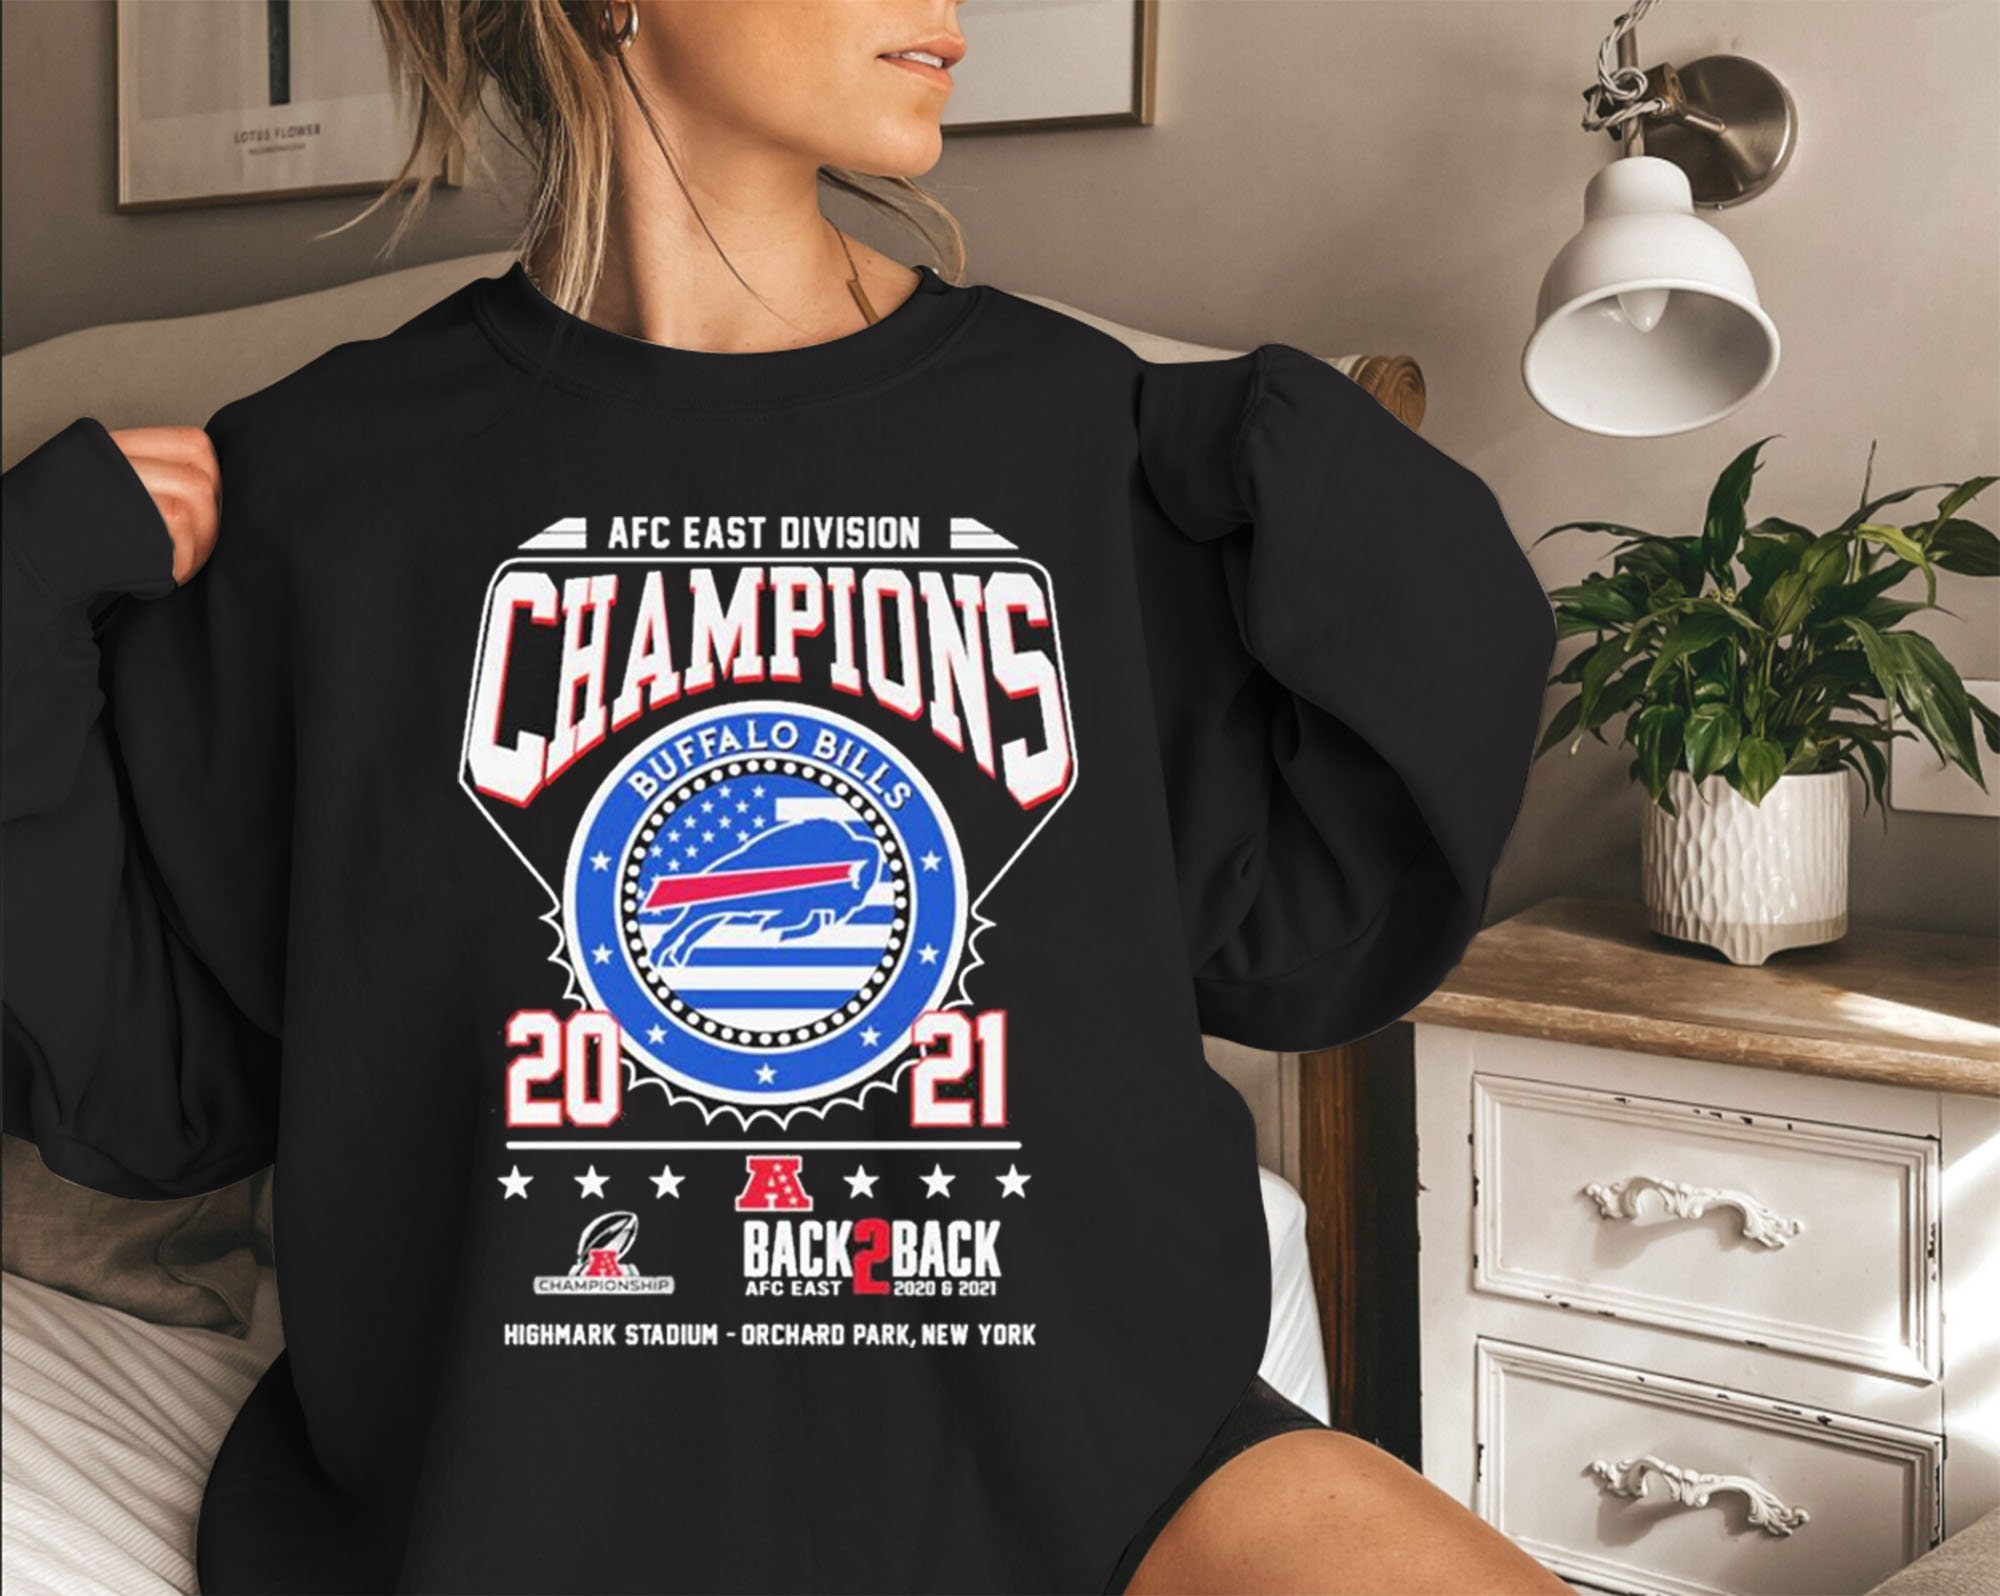  Buffalo Bills Shirt